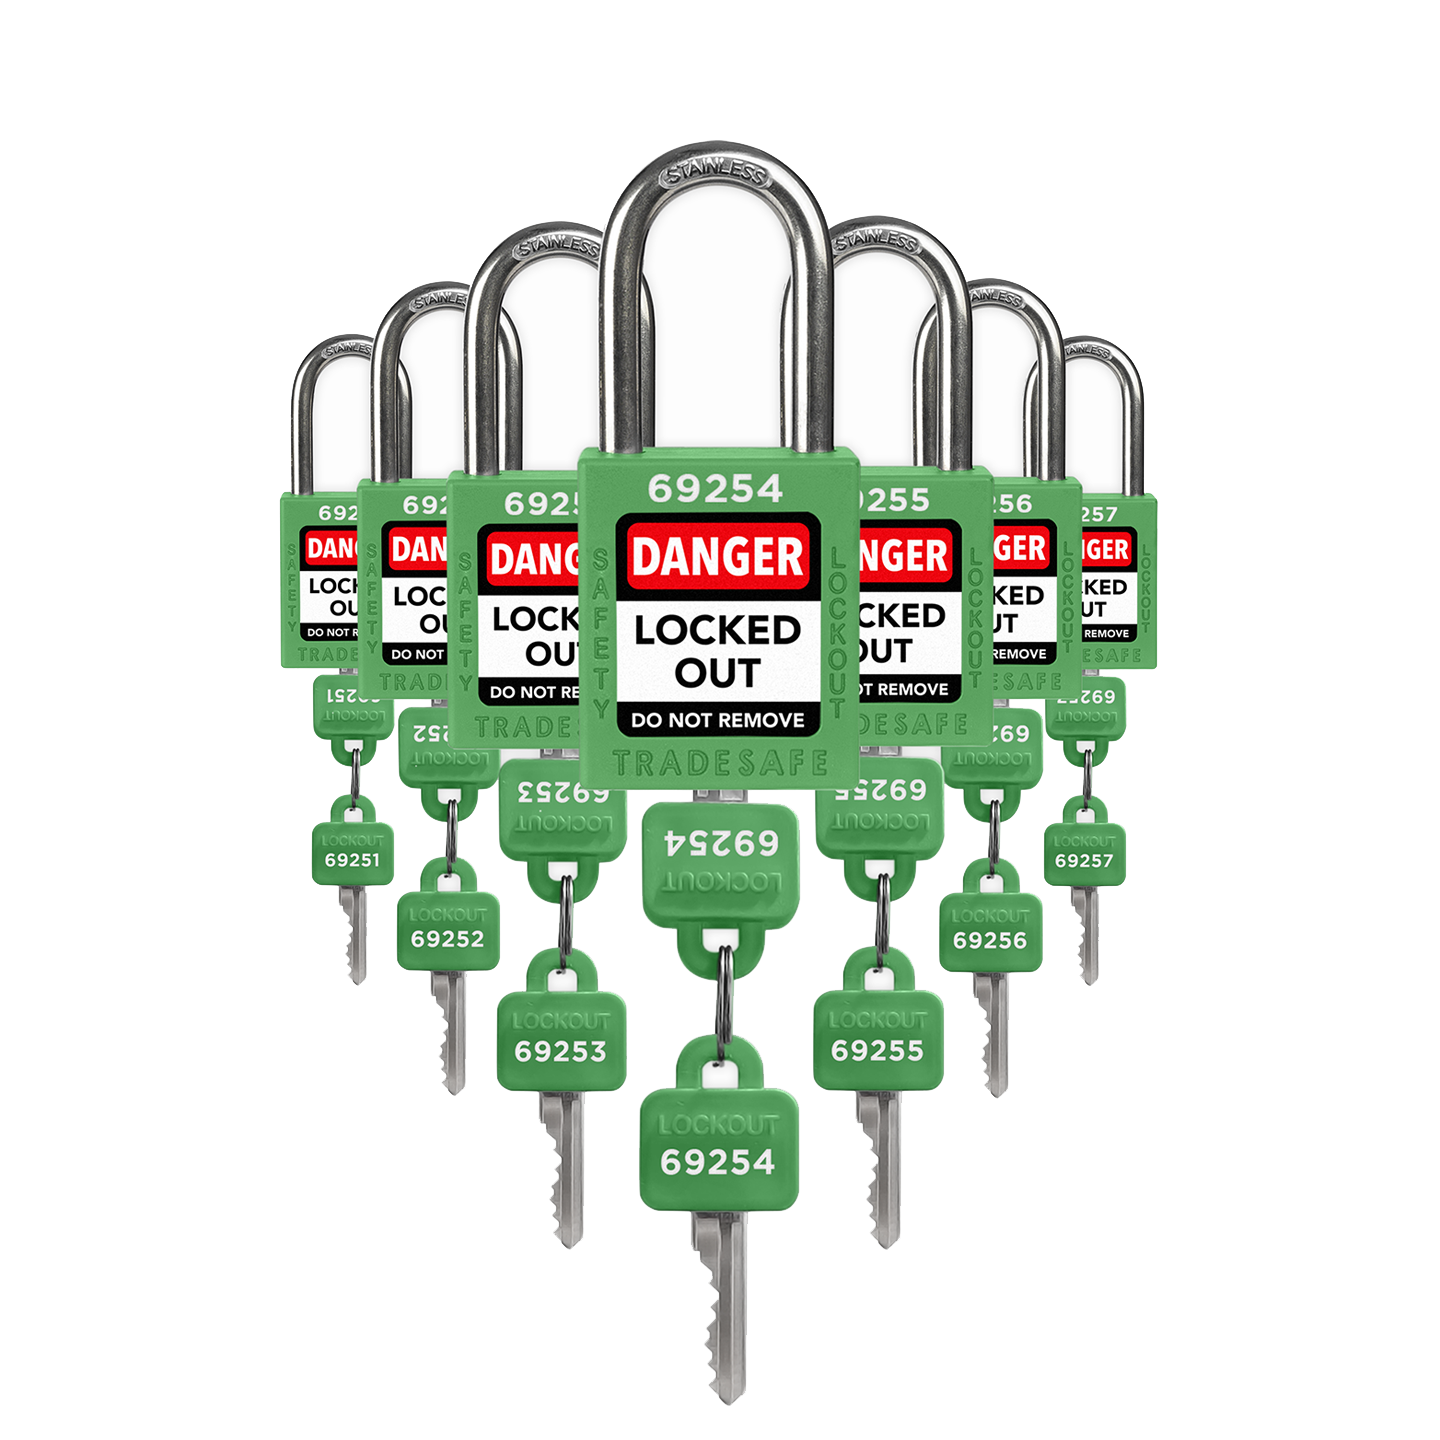 Candados con llaves diferentes - 7 candados verdes - 2 llaves por candado